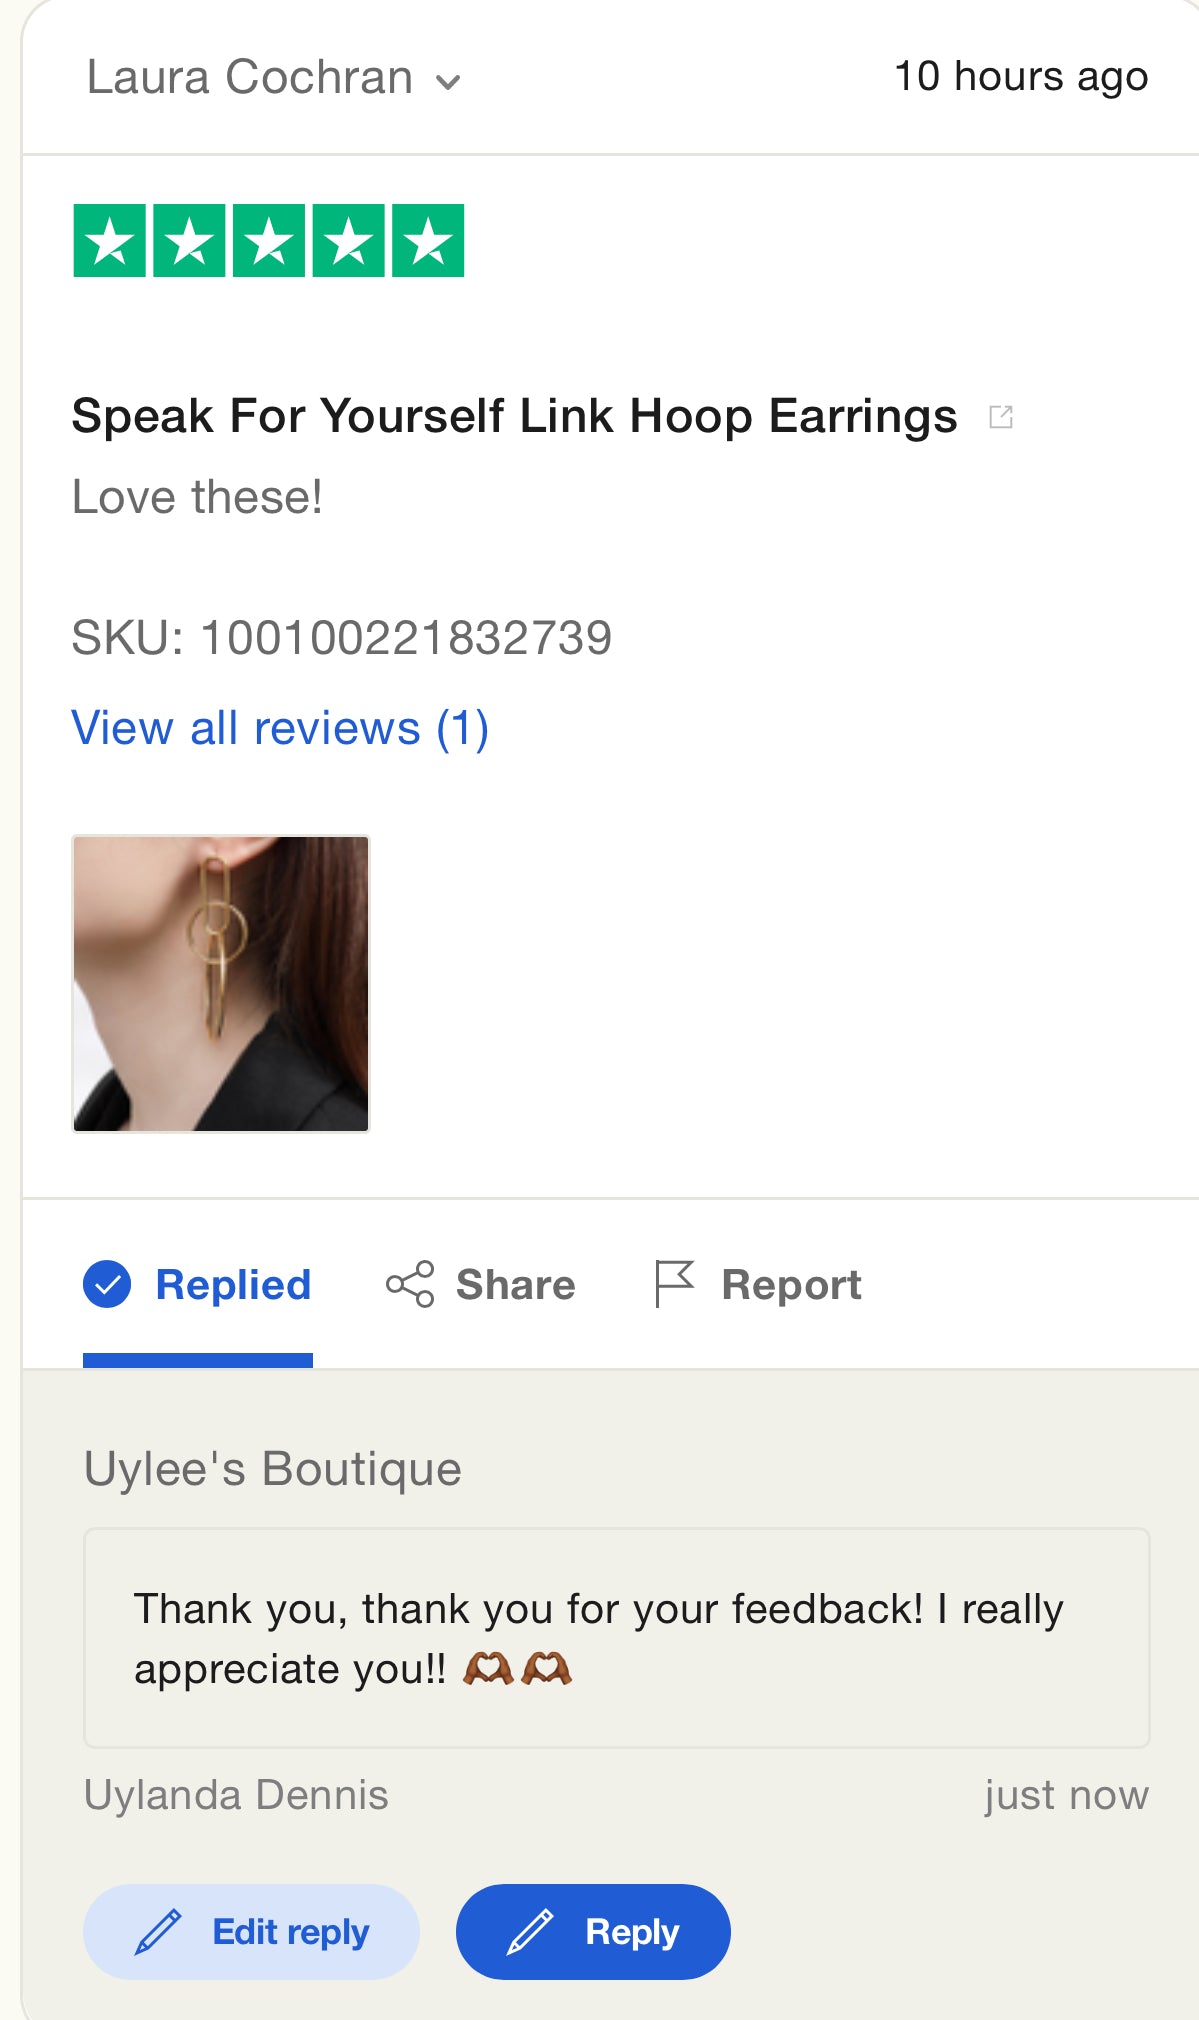 Speak For Yourself Link Hoop Earrings